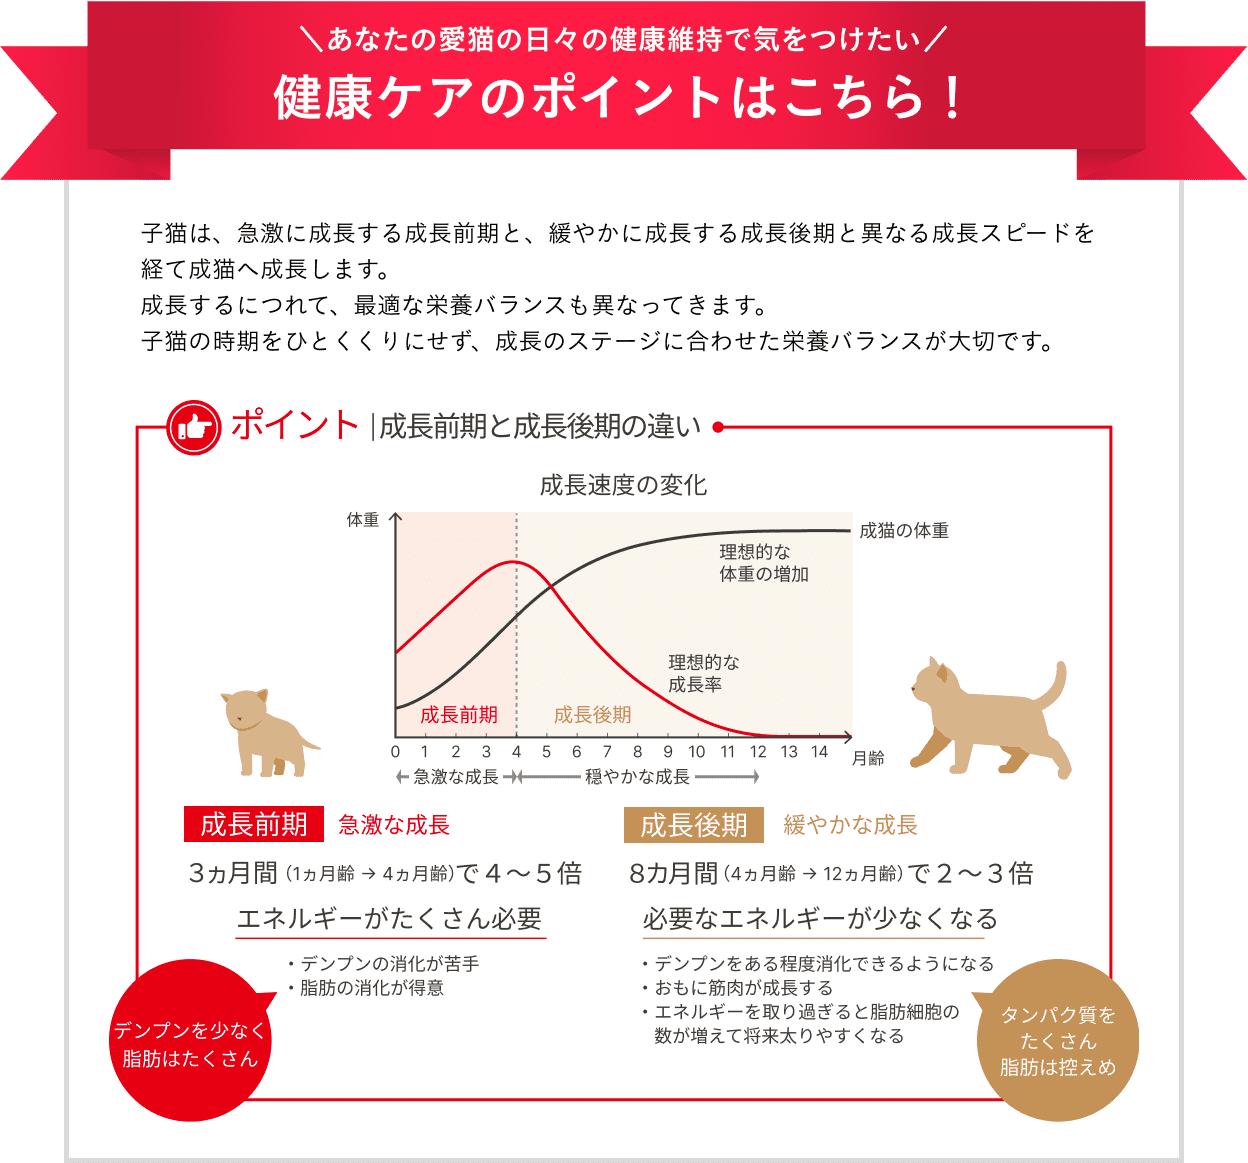 子猫は、急激に成長する成長前期と、緩やかに成長する成長後期と異なる成長スピードを経て成猫へ成長します。成長するにつれて、最適な栄養バランスも異なってきます。成長のステージに合わせた栄養バランスが大切です。